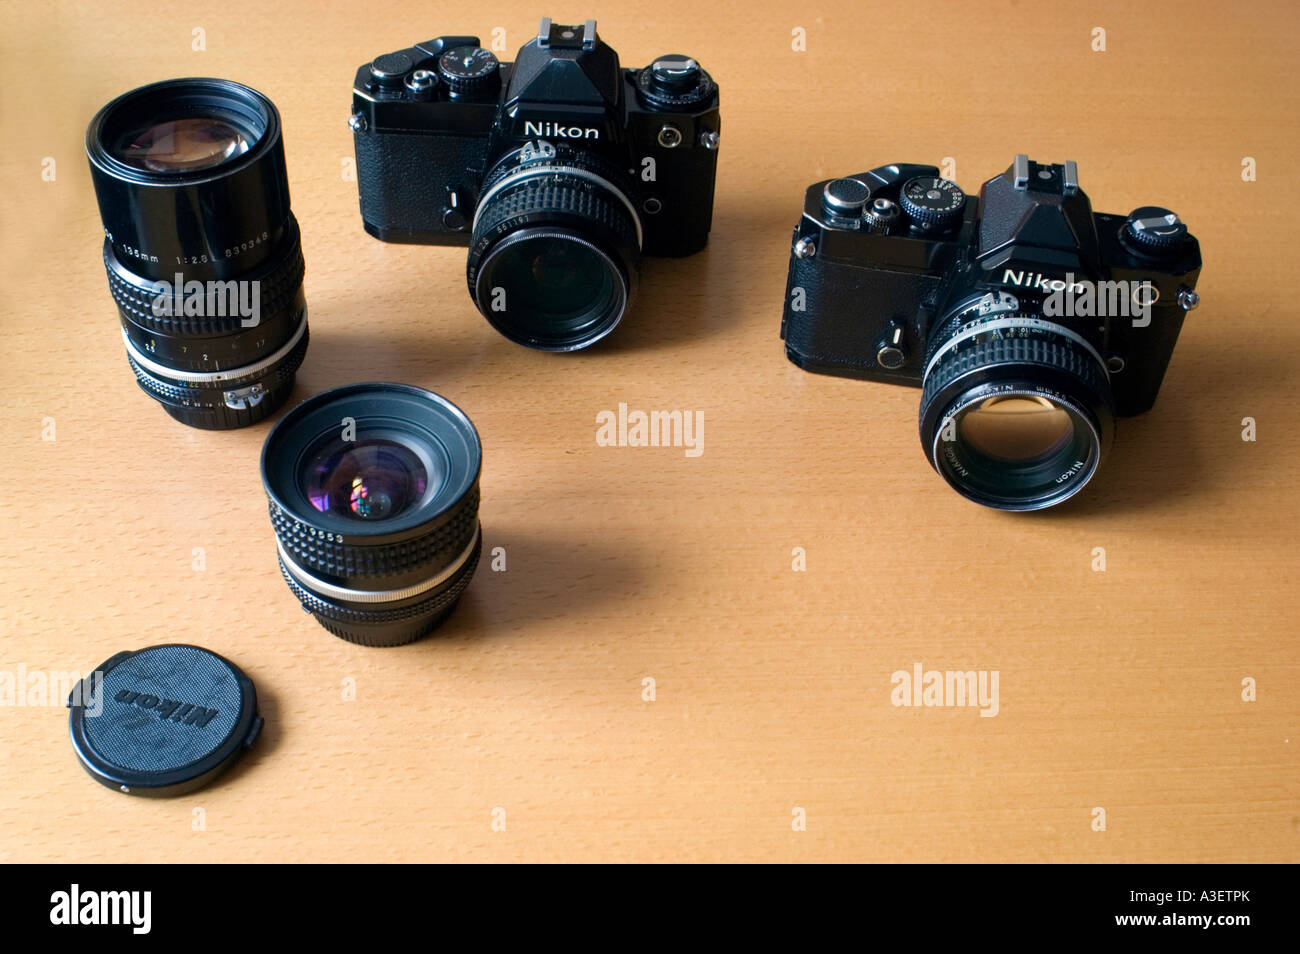 Attrezzatura fotografica Fotografia due corpi macchina fotografica Nikon da  35 mm con quattro obiettivi, francia e fotocamera vintage Foto stock - Alamy